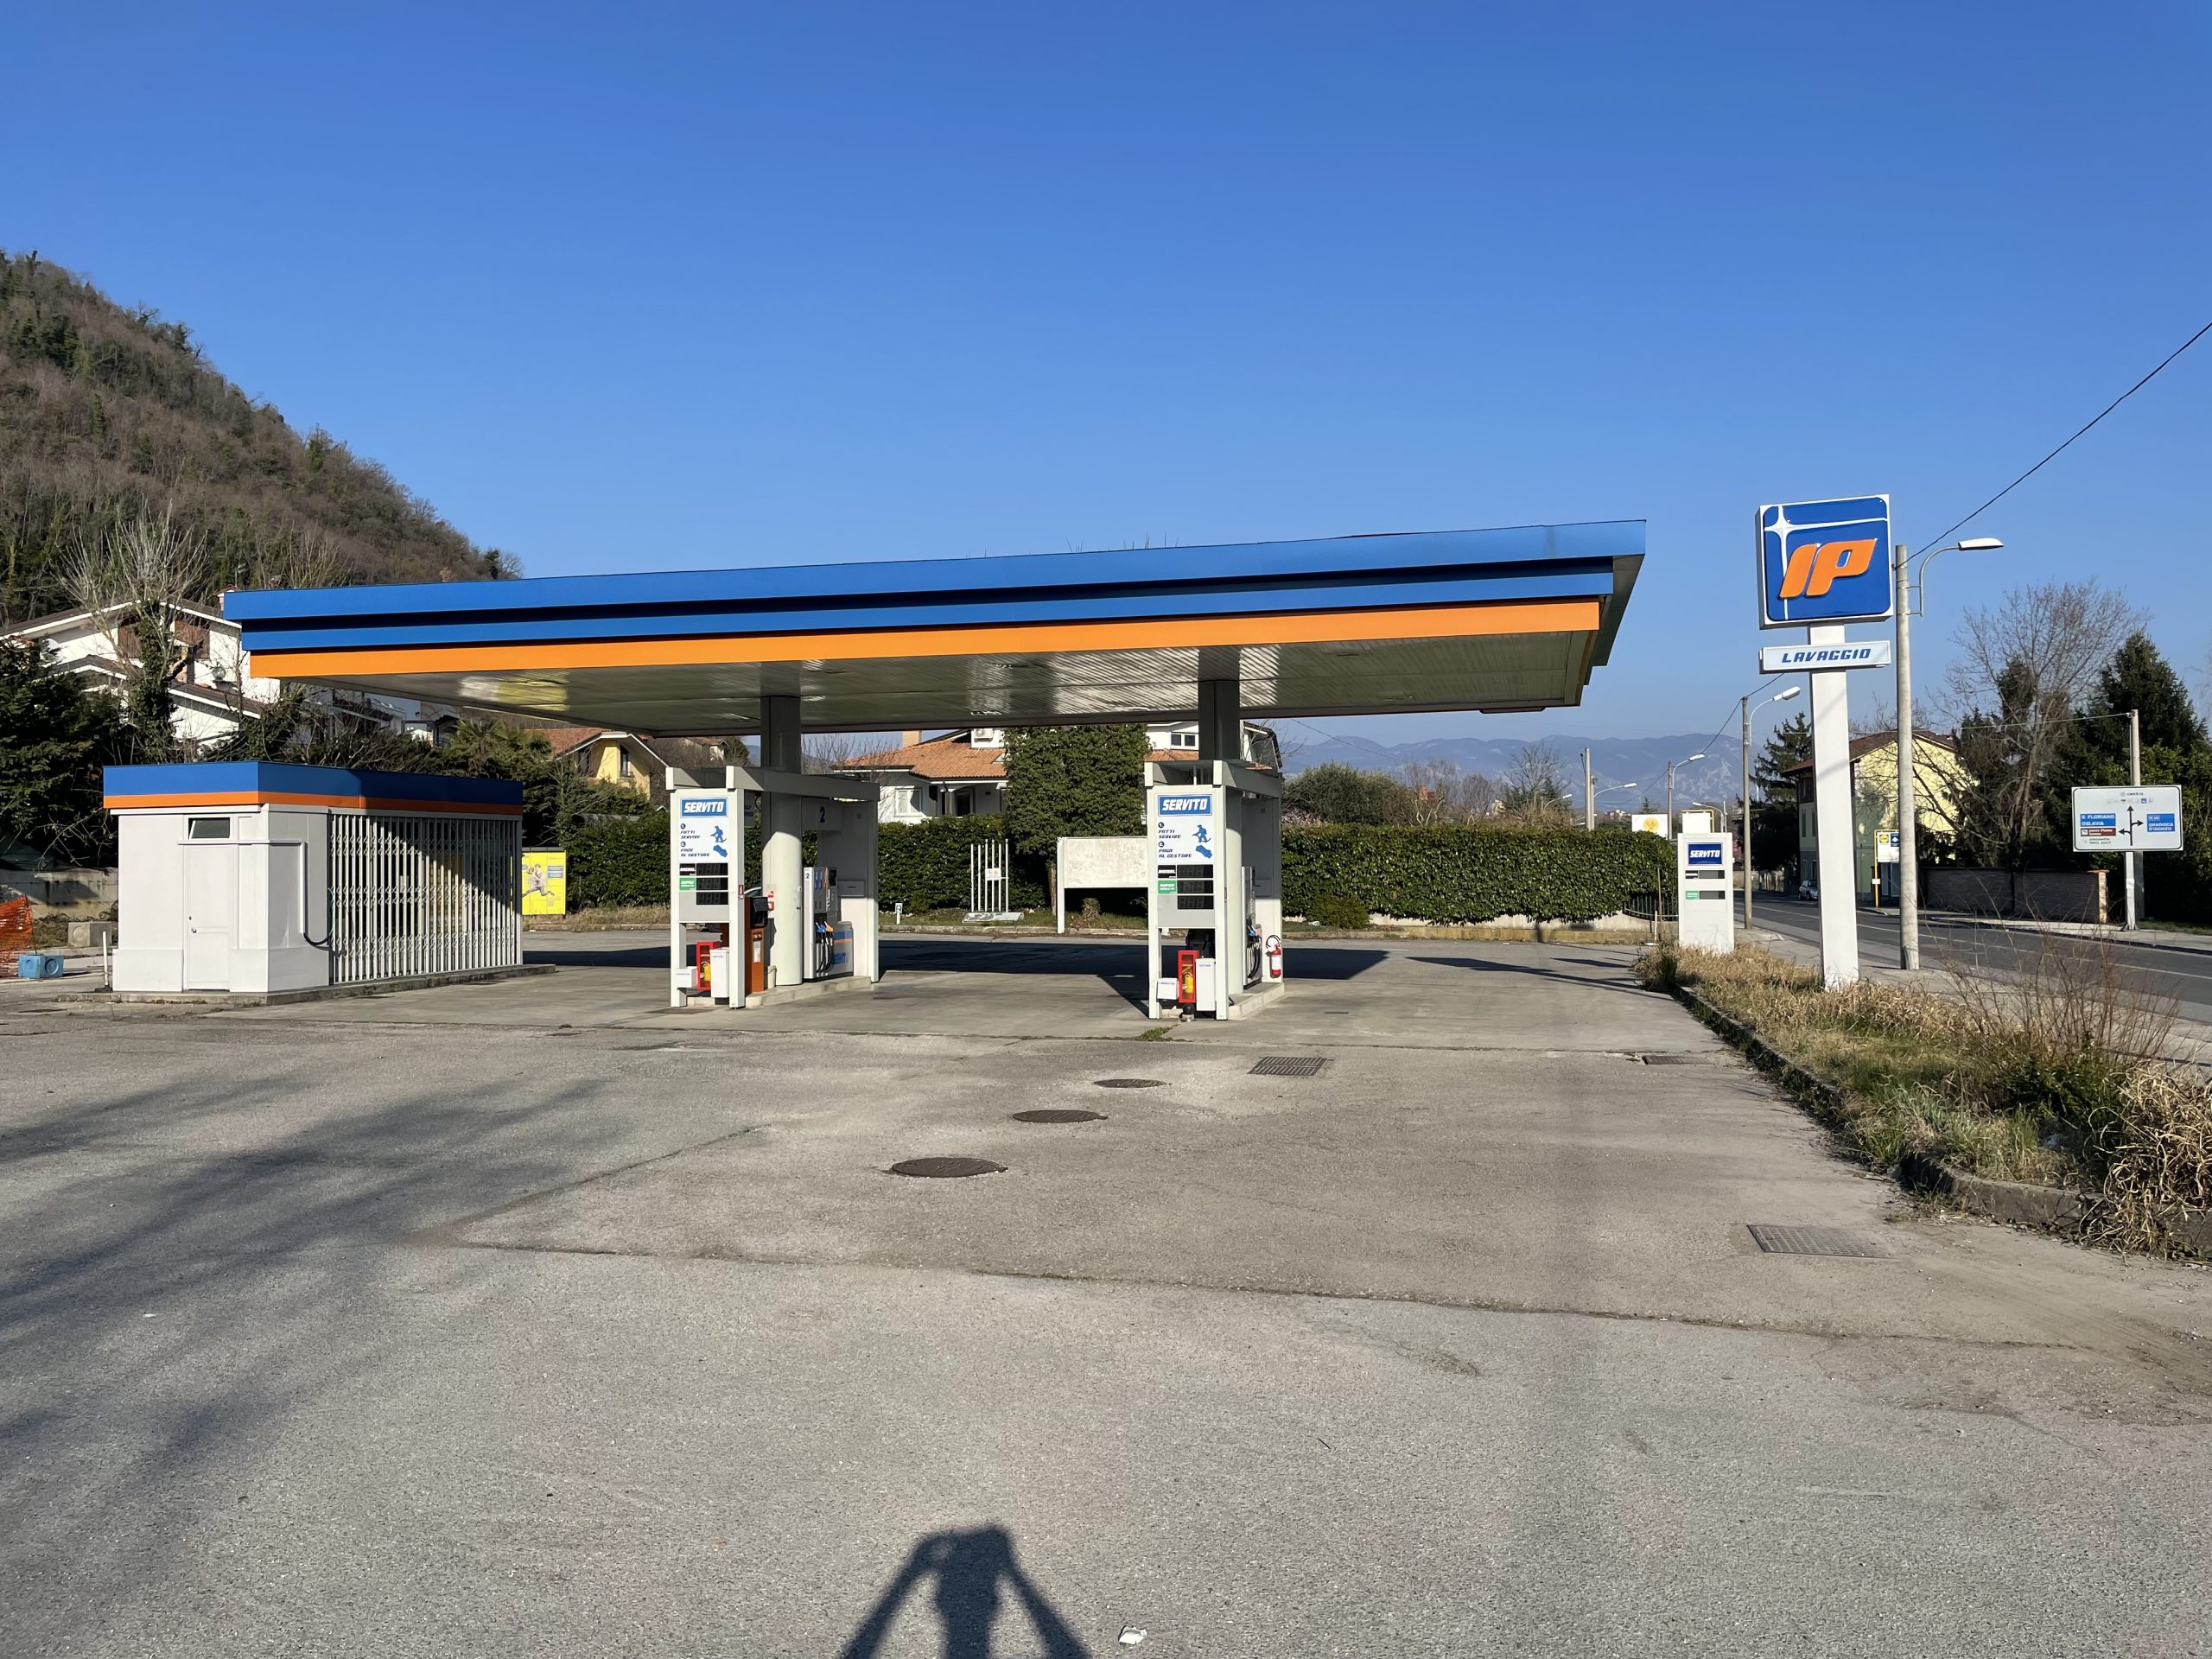 bencinska črpalka, Italija